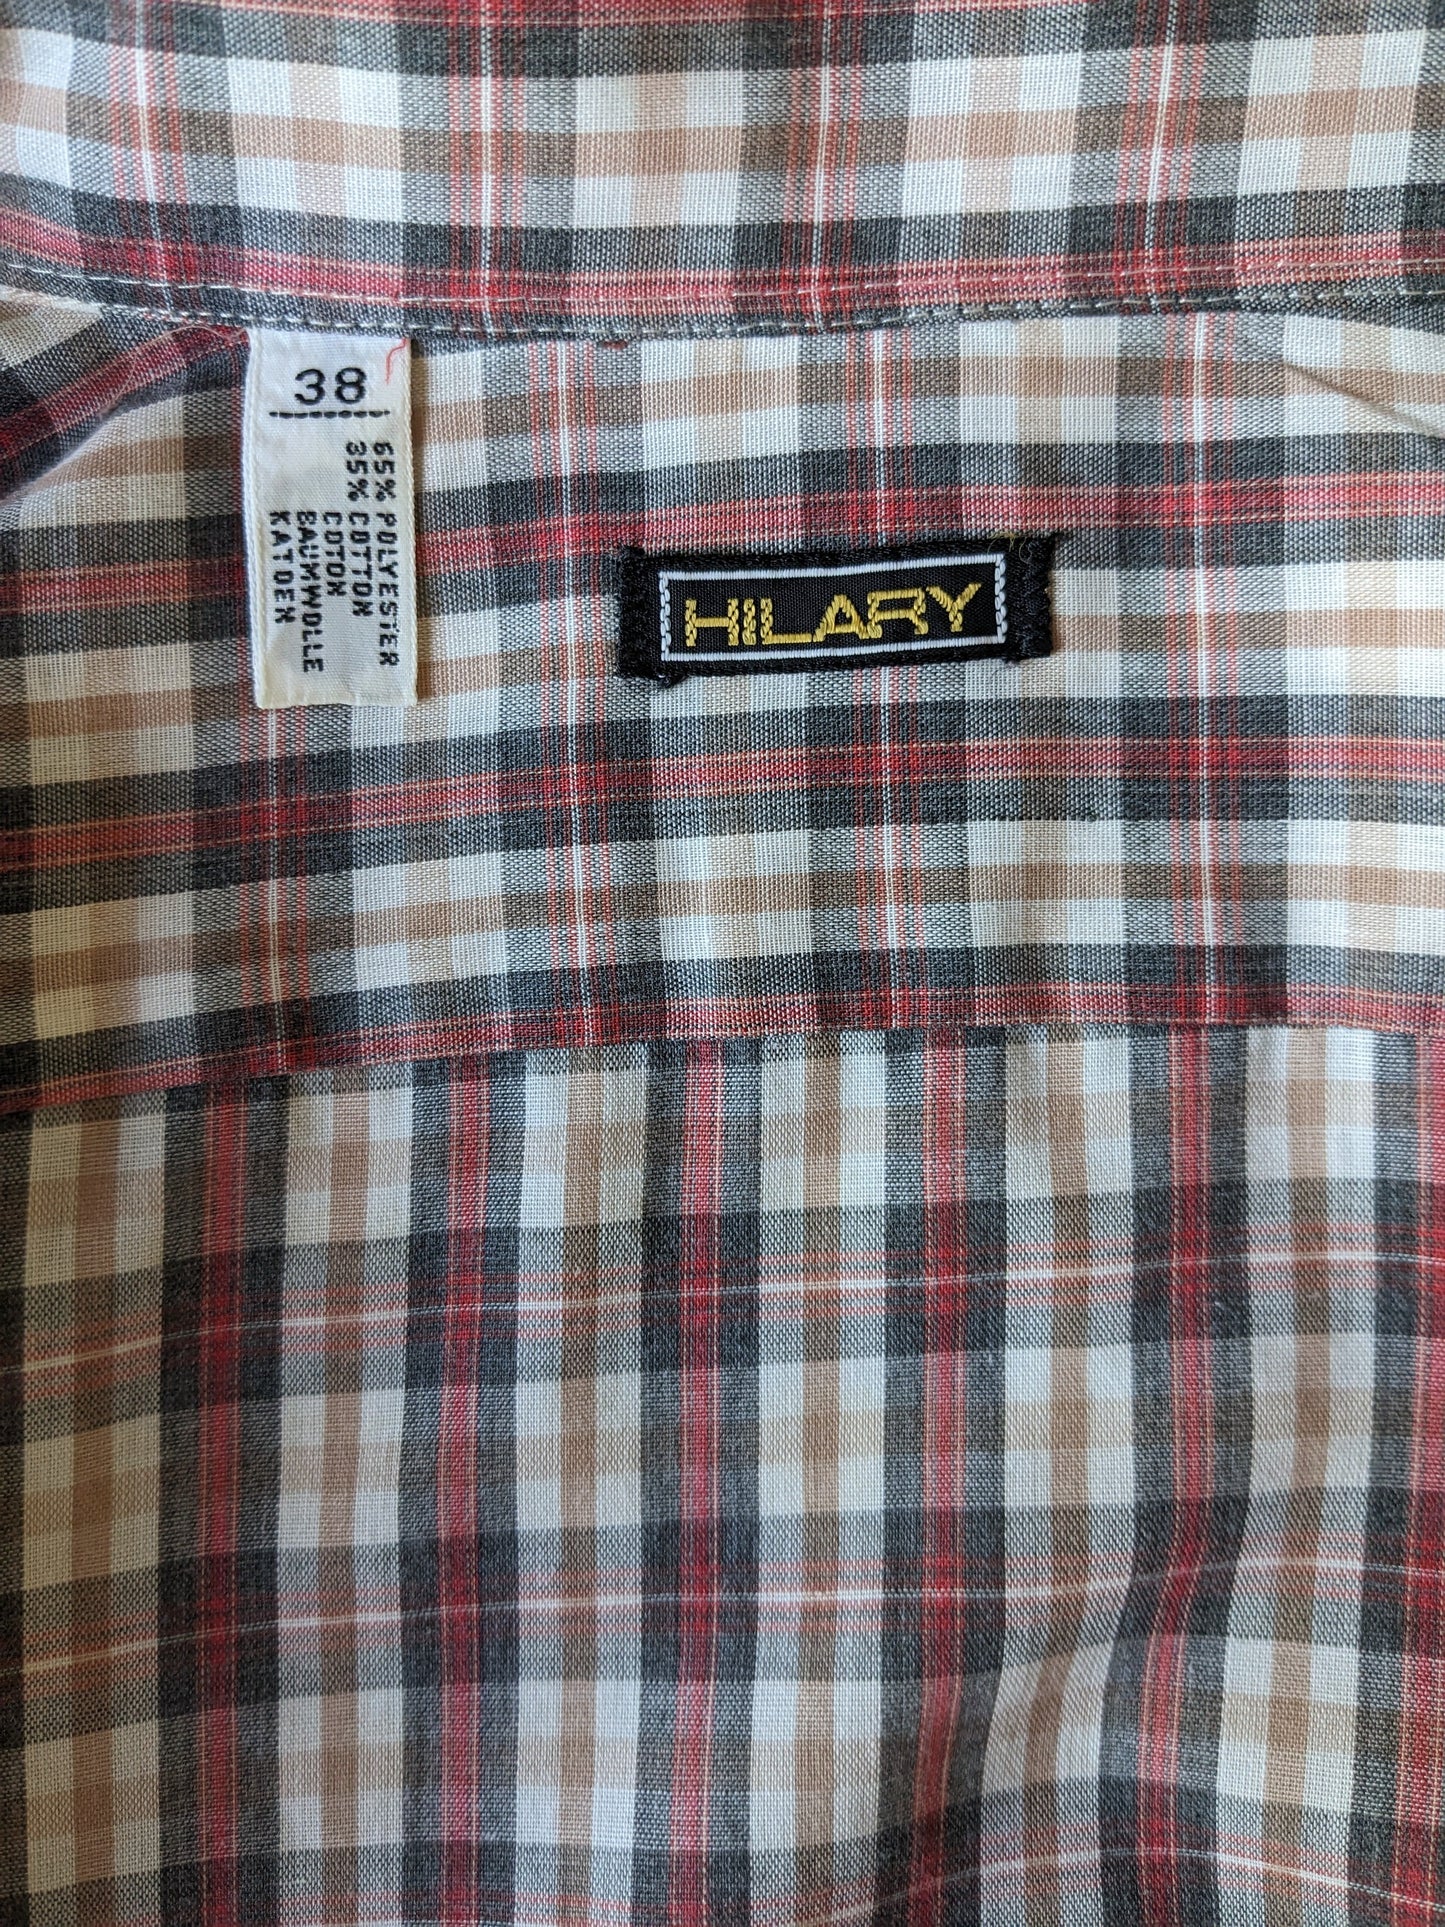 Chemise à queue Hilary vintage des années 70. Rose noir à carreaux. Taille 38 / S.